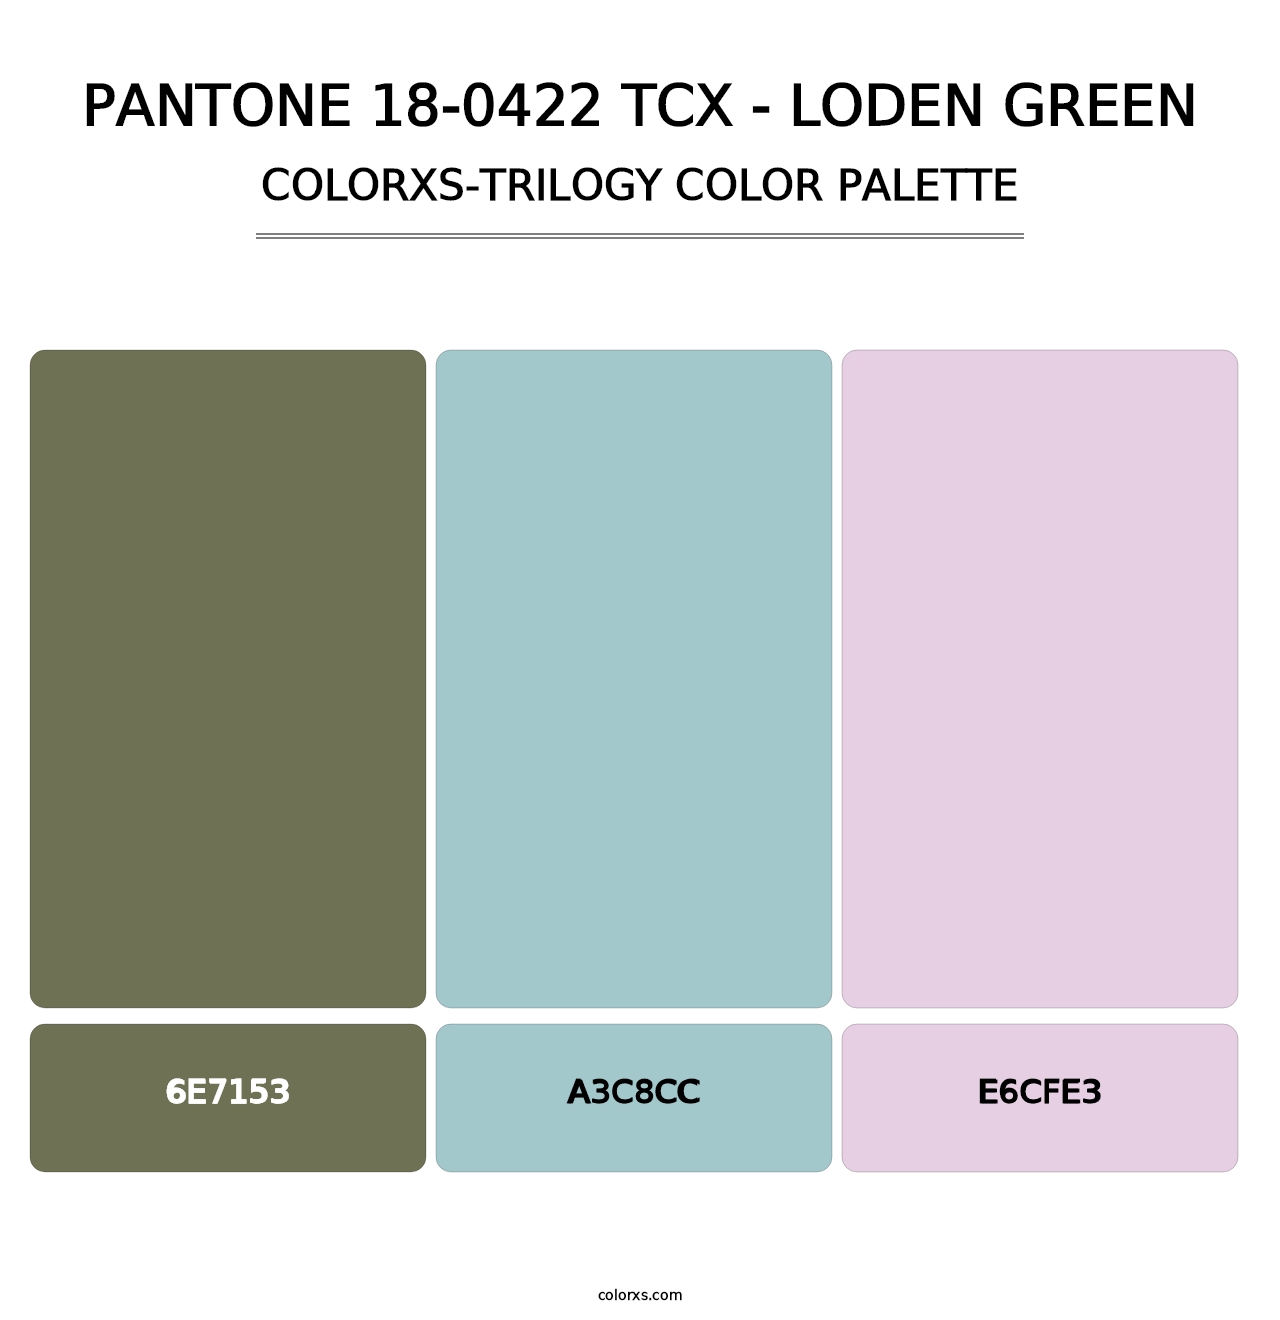 PANTONE 18-0422 TCX - Loden Green - Colorxs Trilogy Palette